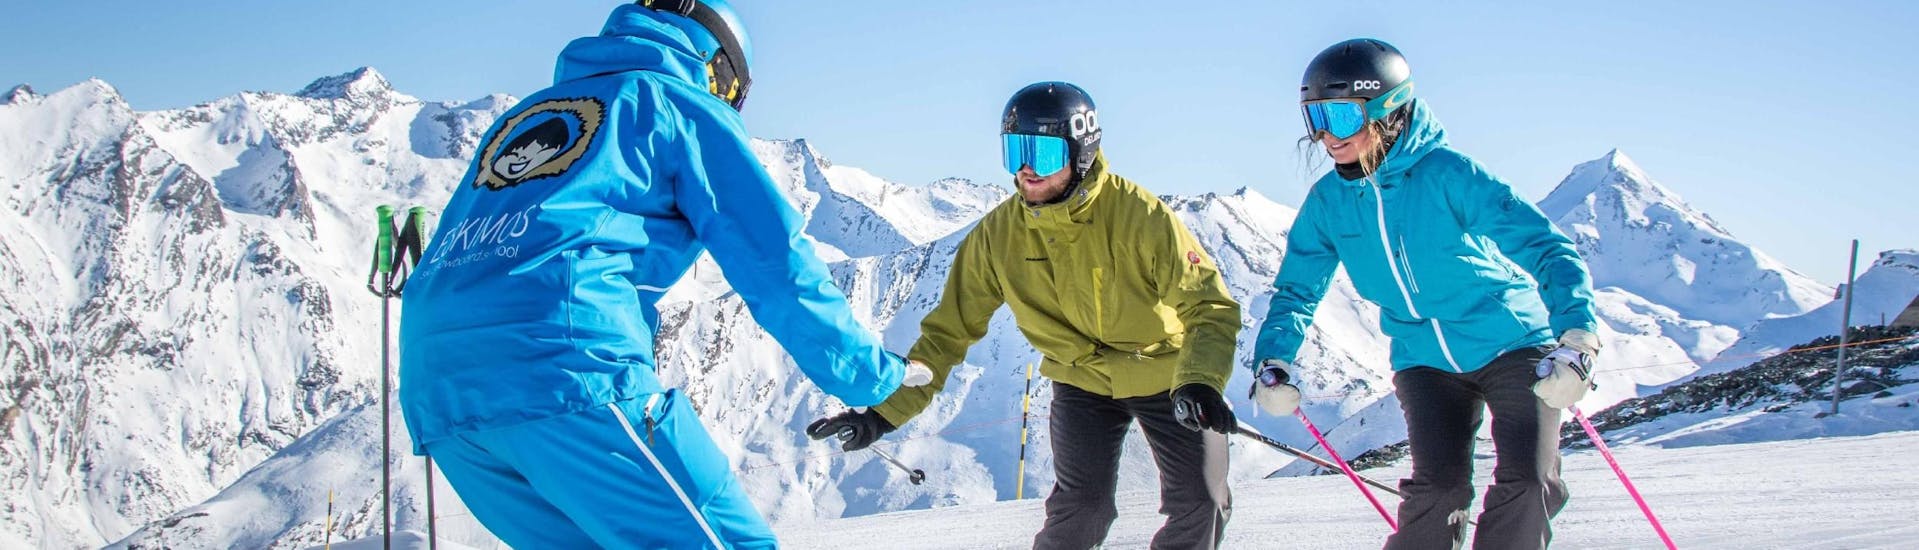 Lezioni di sci per adulti per tutti i livelli con Ski School ESKIMOS Saas-Fee.